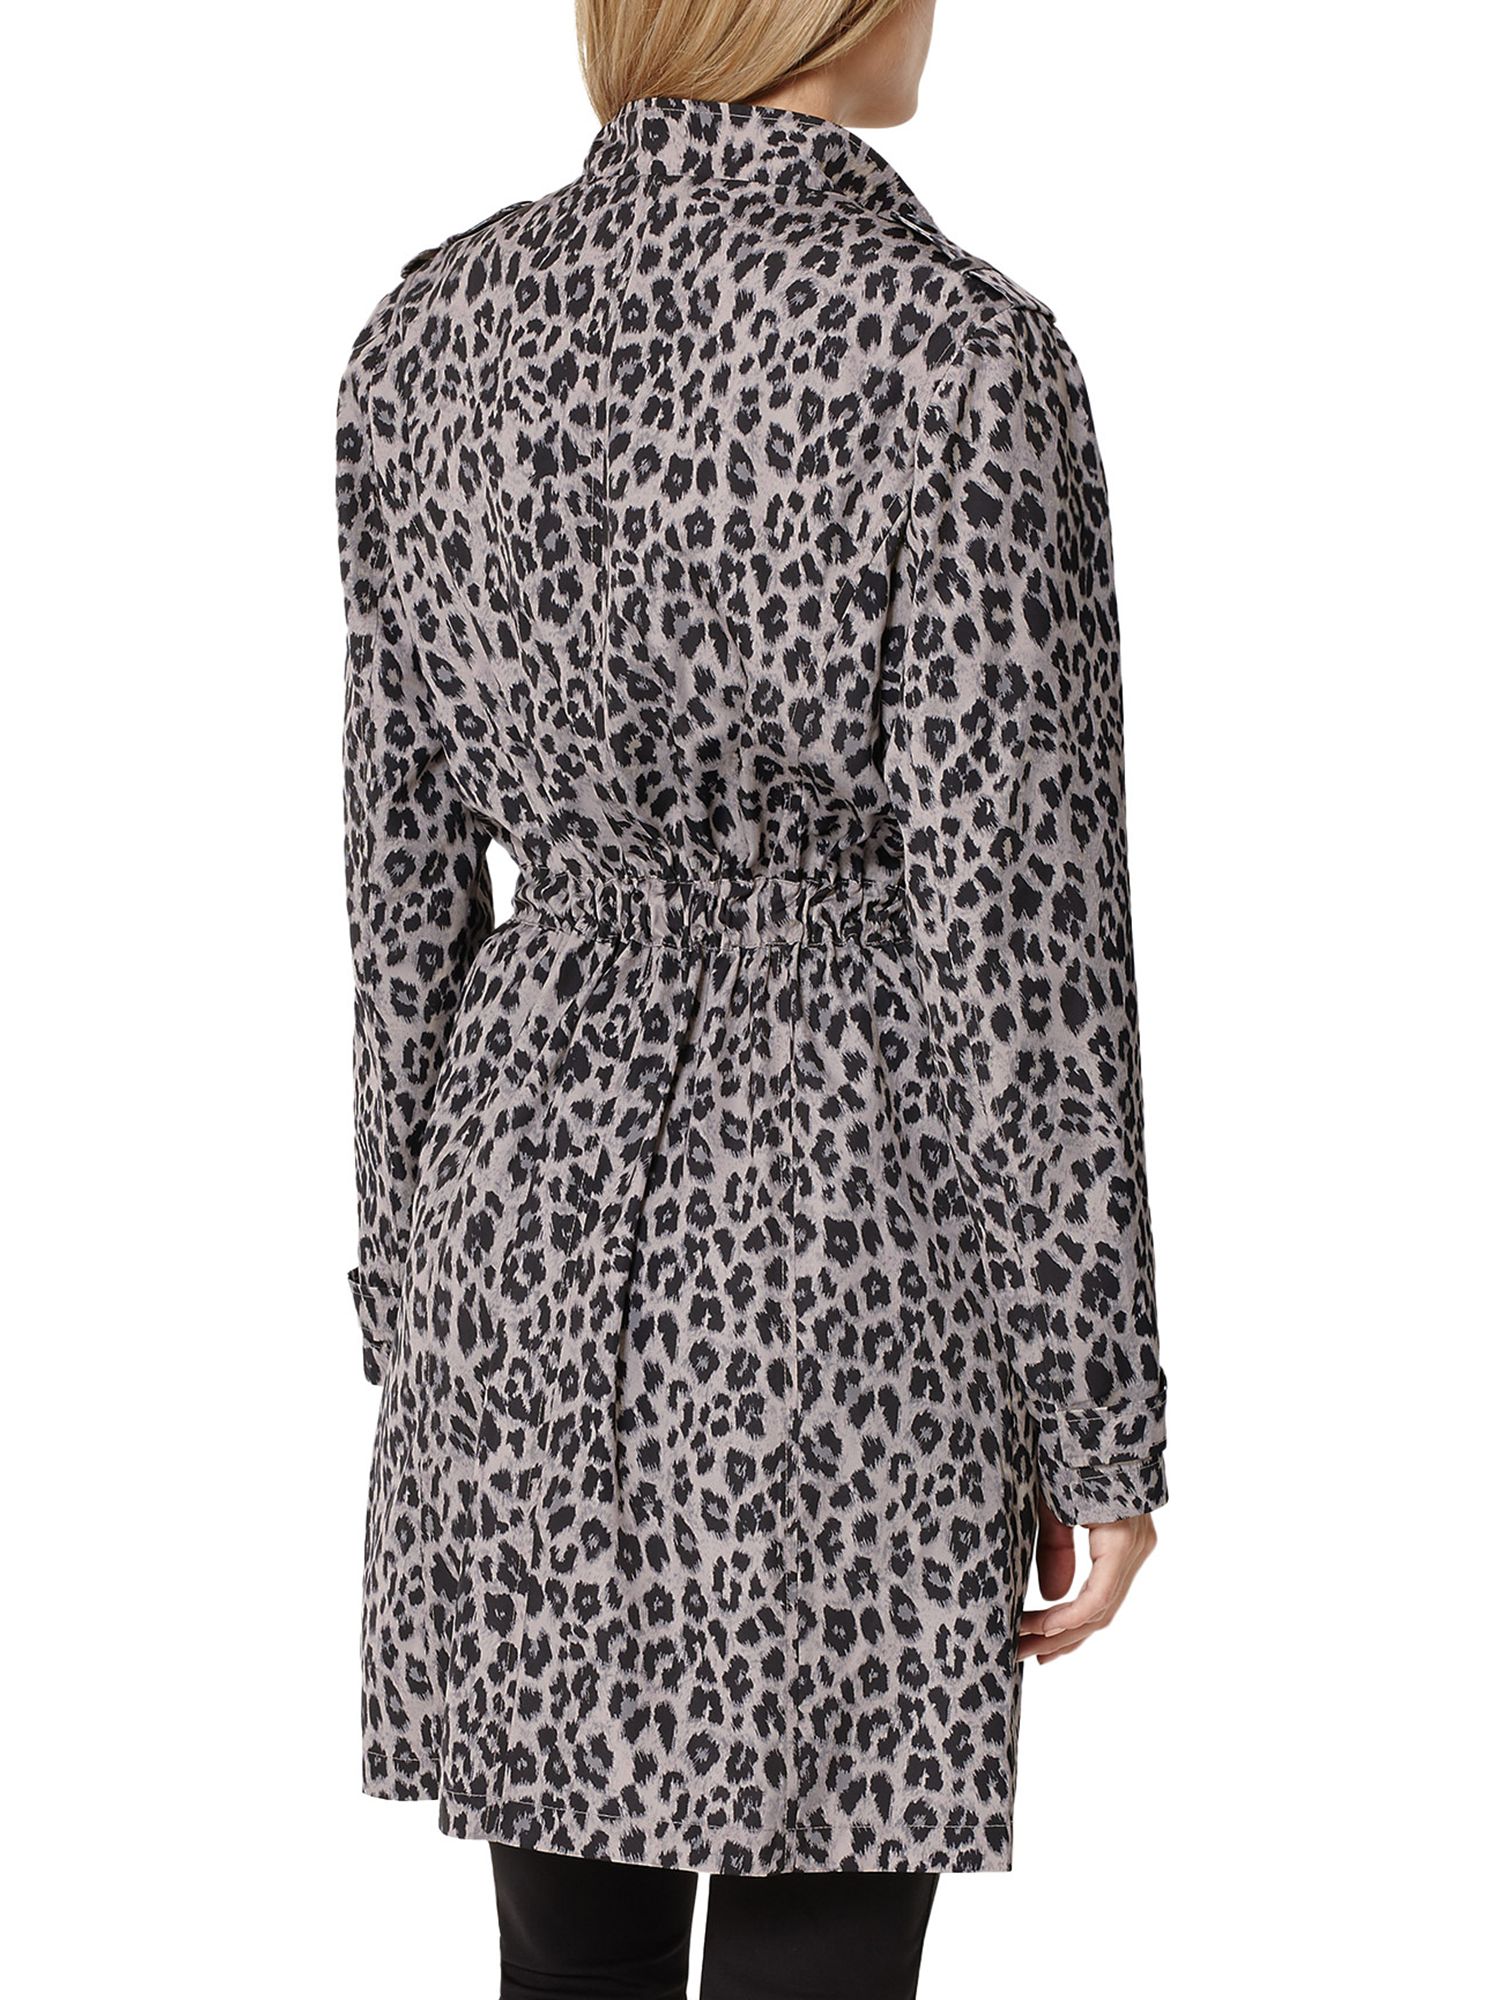 damsel in a dress leopard coat